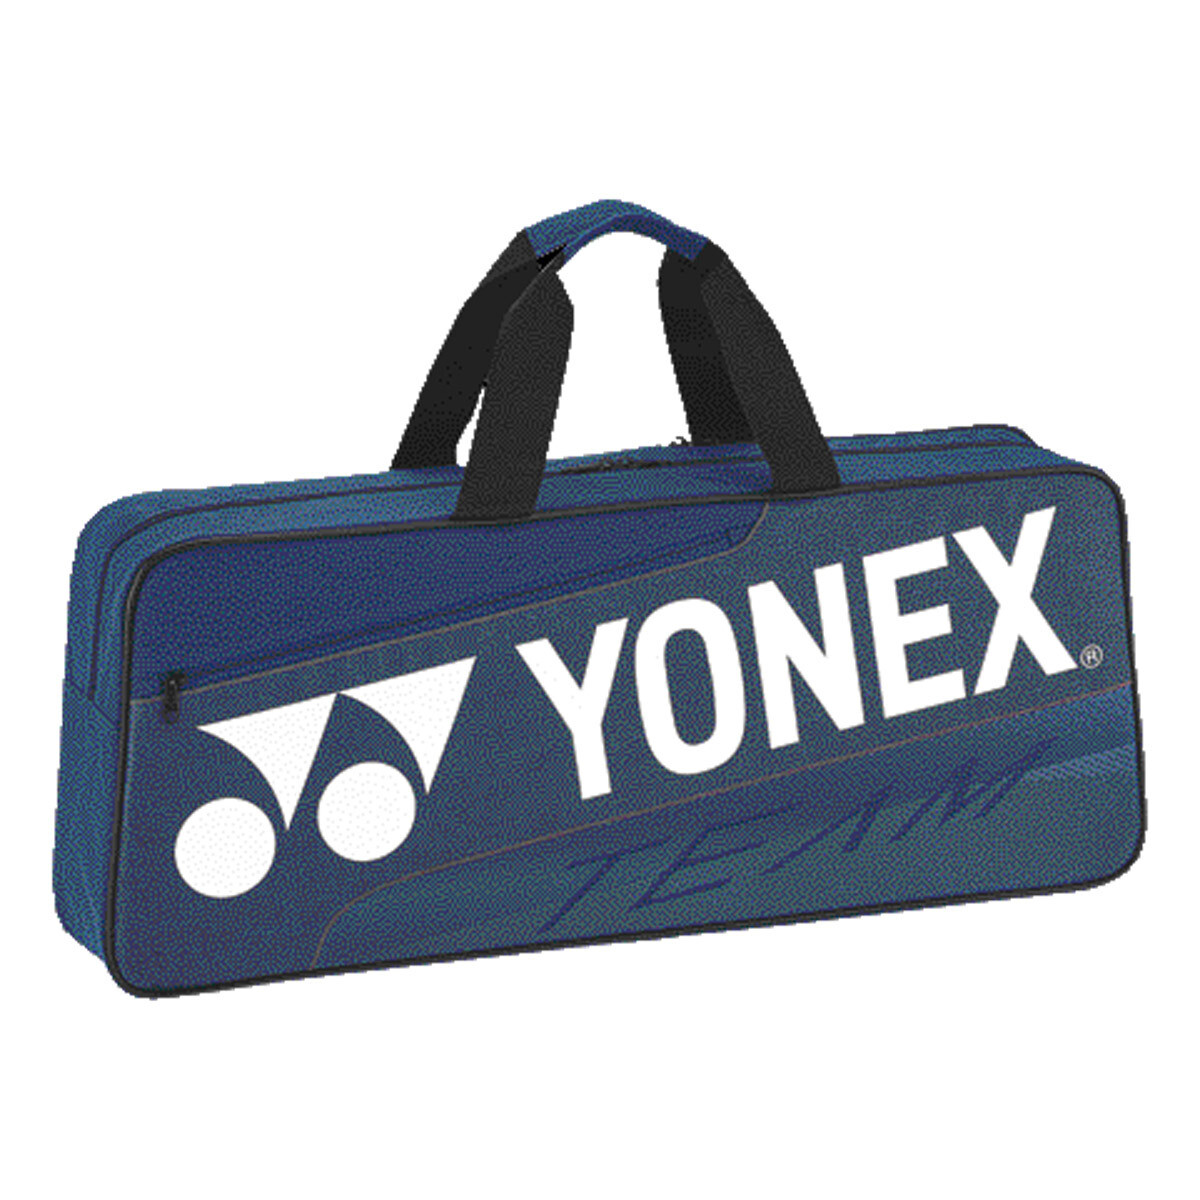 Yonex Team Tournament Bag 42331WEX - Deep Blue